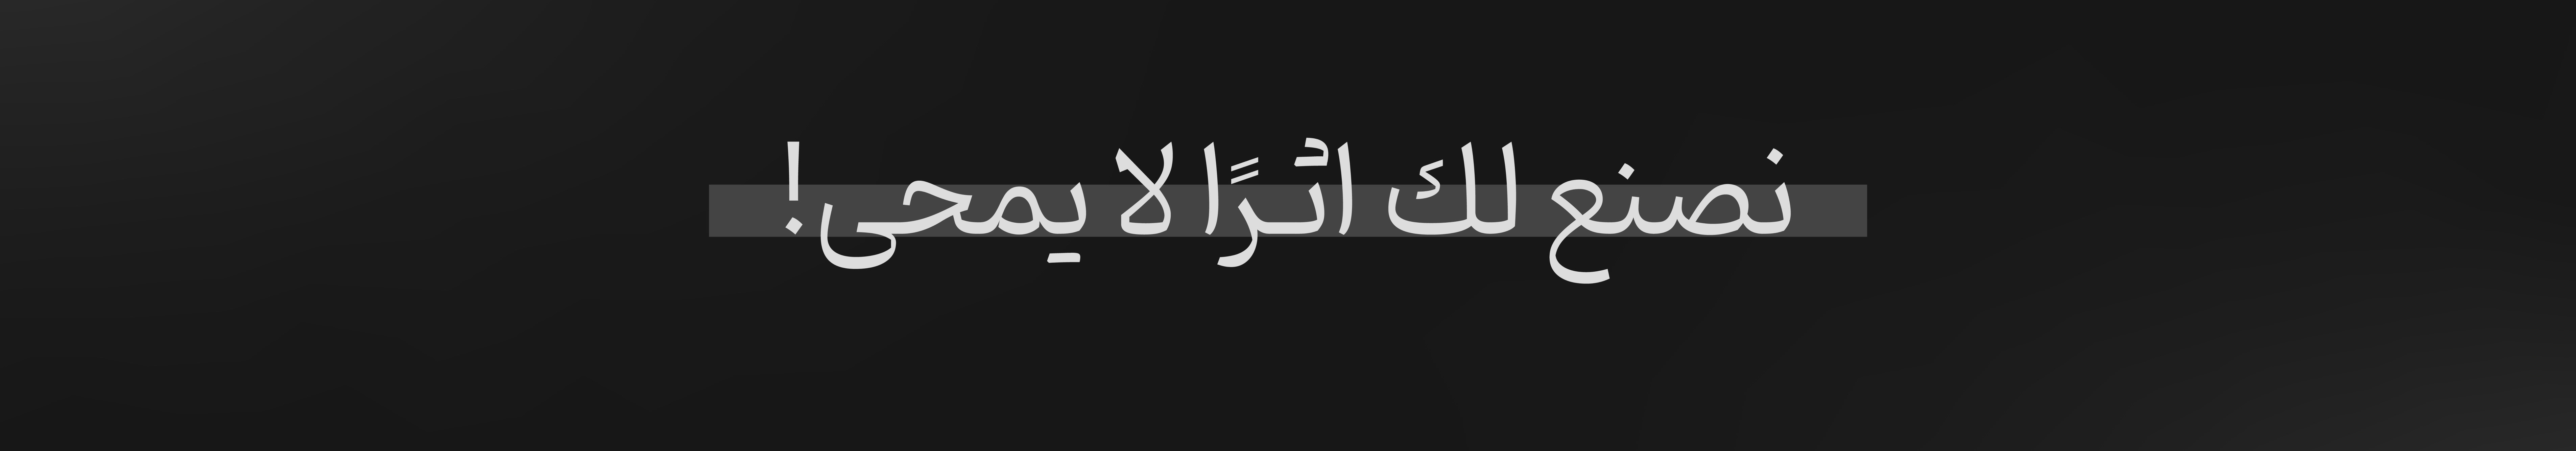 مصمم جرافيك | عبدالإله's profile banner